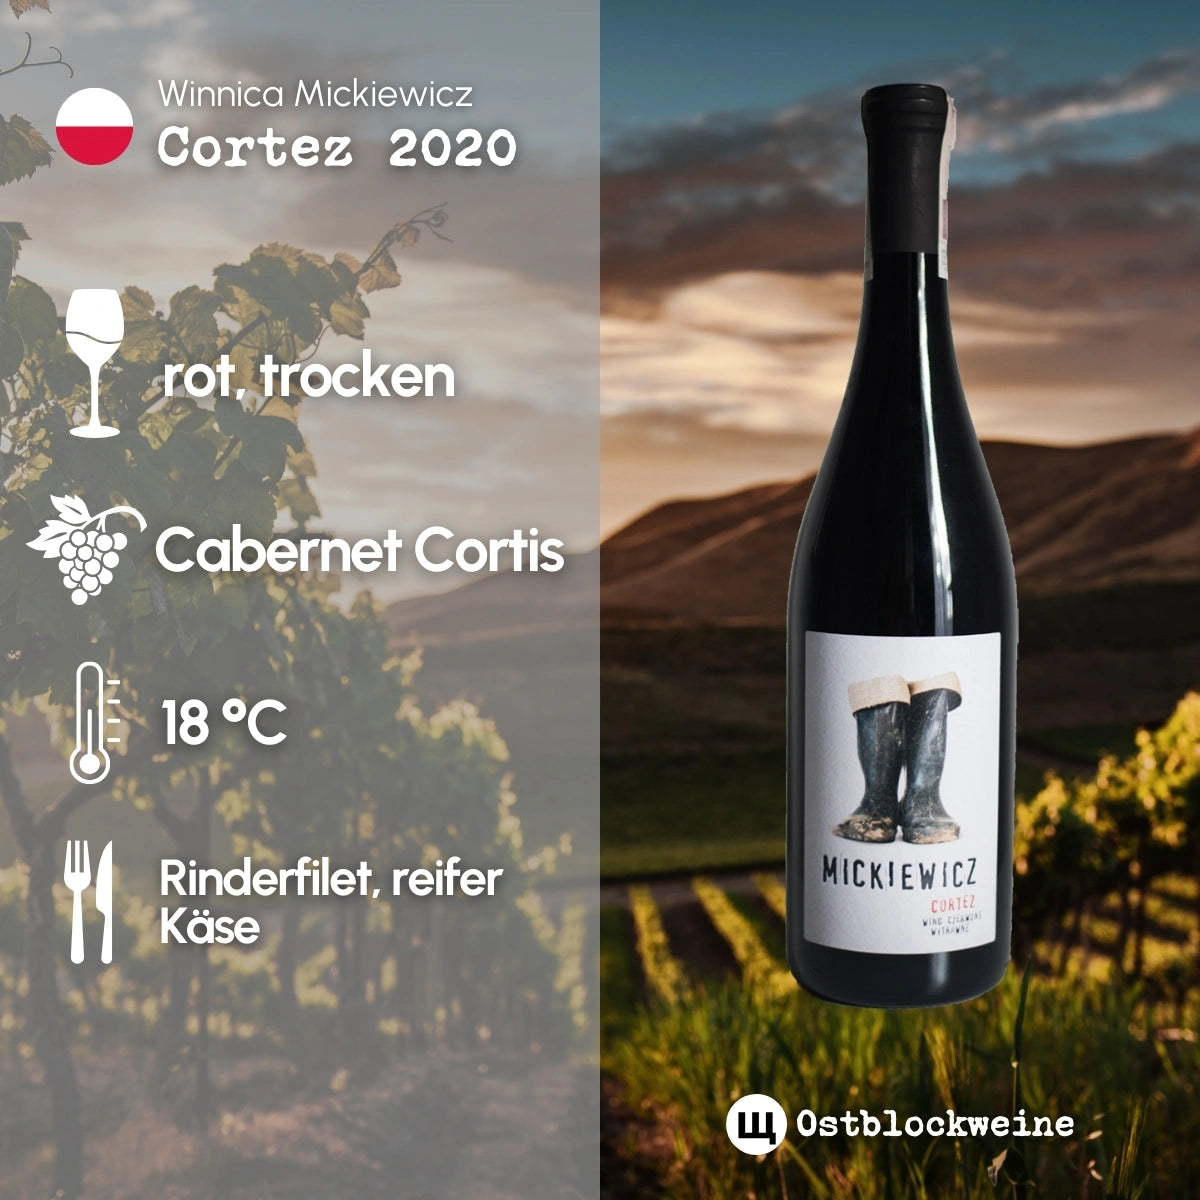 Cortez 2020 - Rotwein trocken aus Polen - Winnica Mickiewicz - ostblockweine